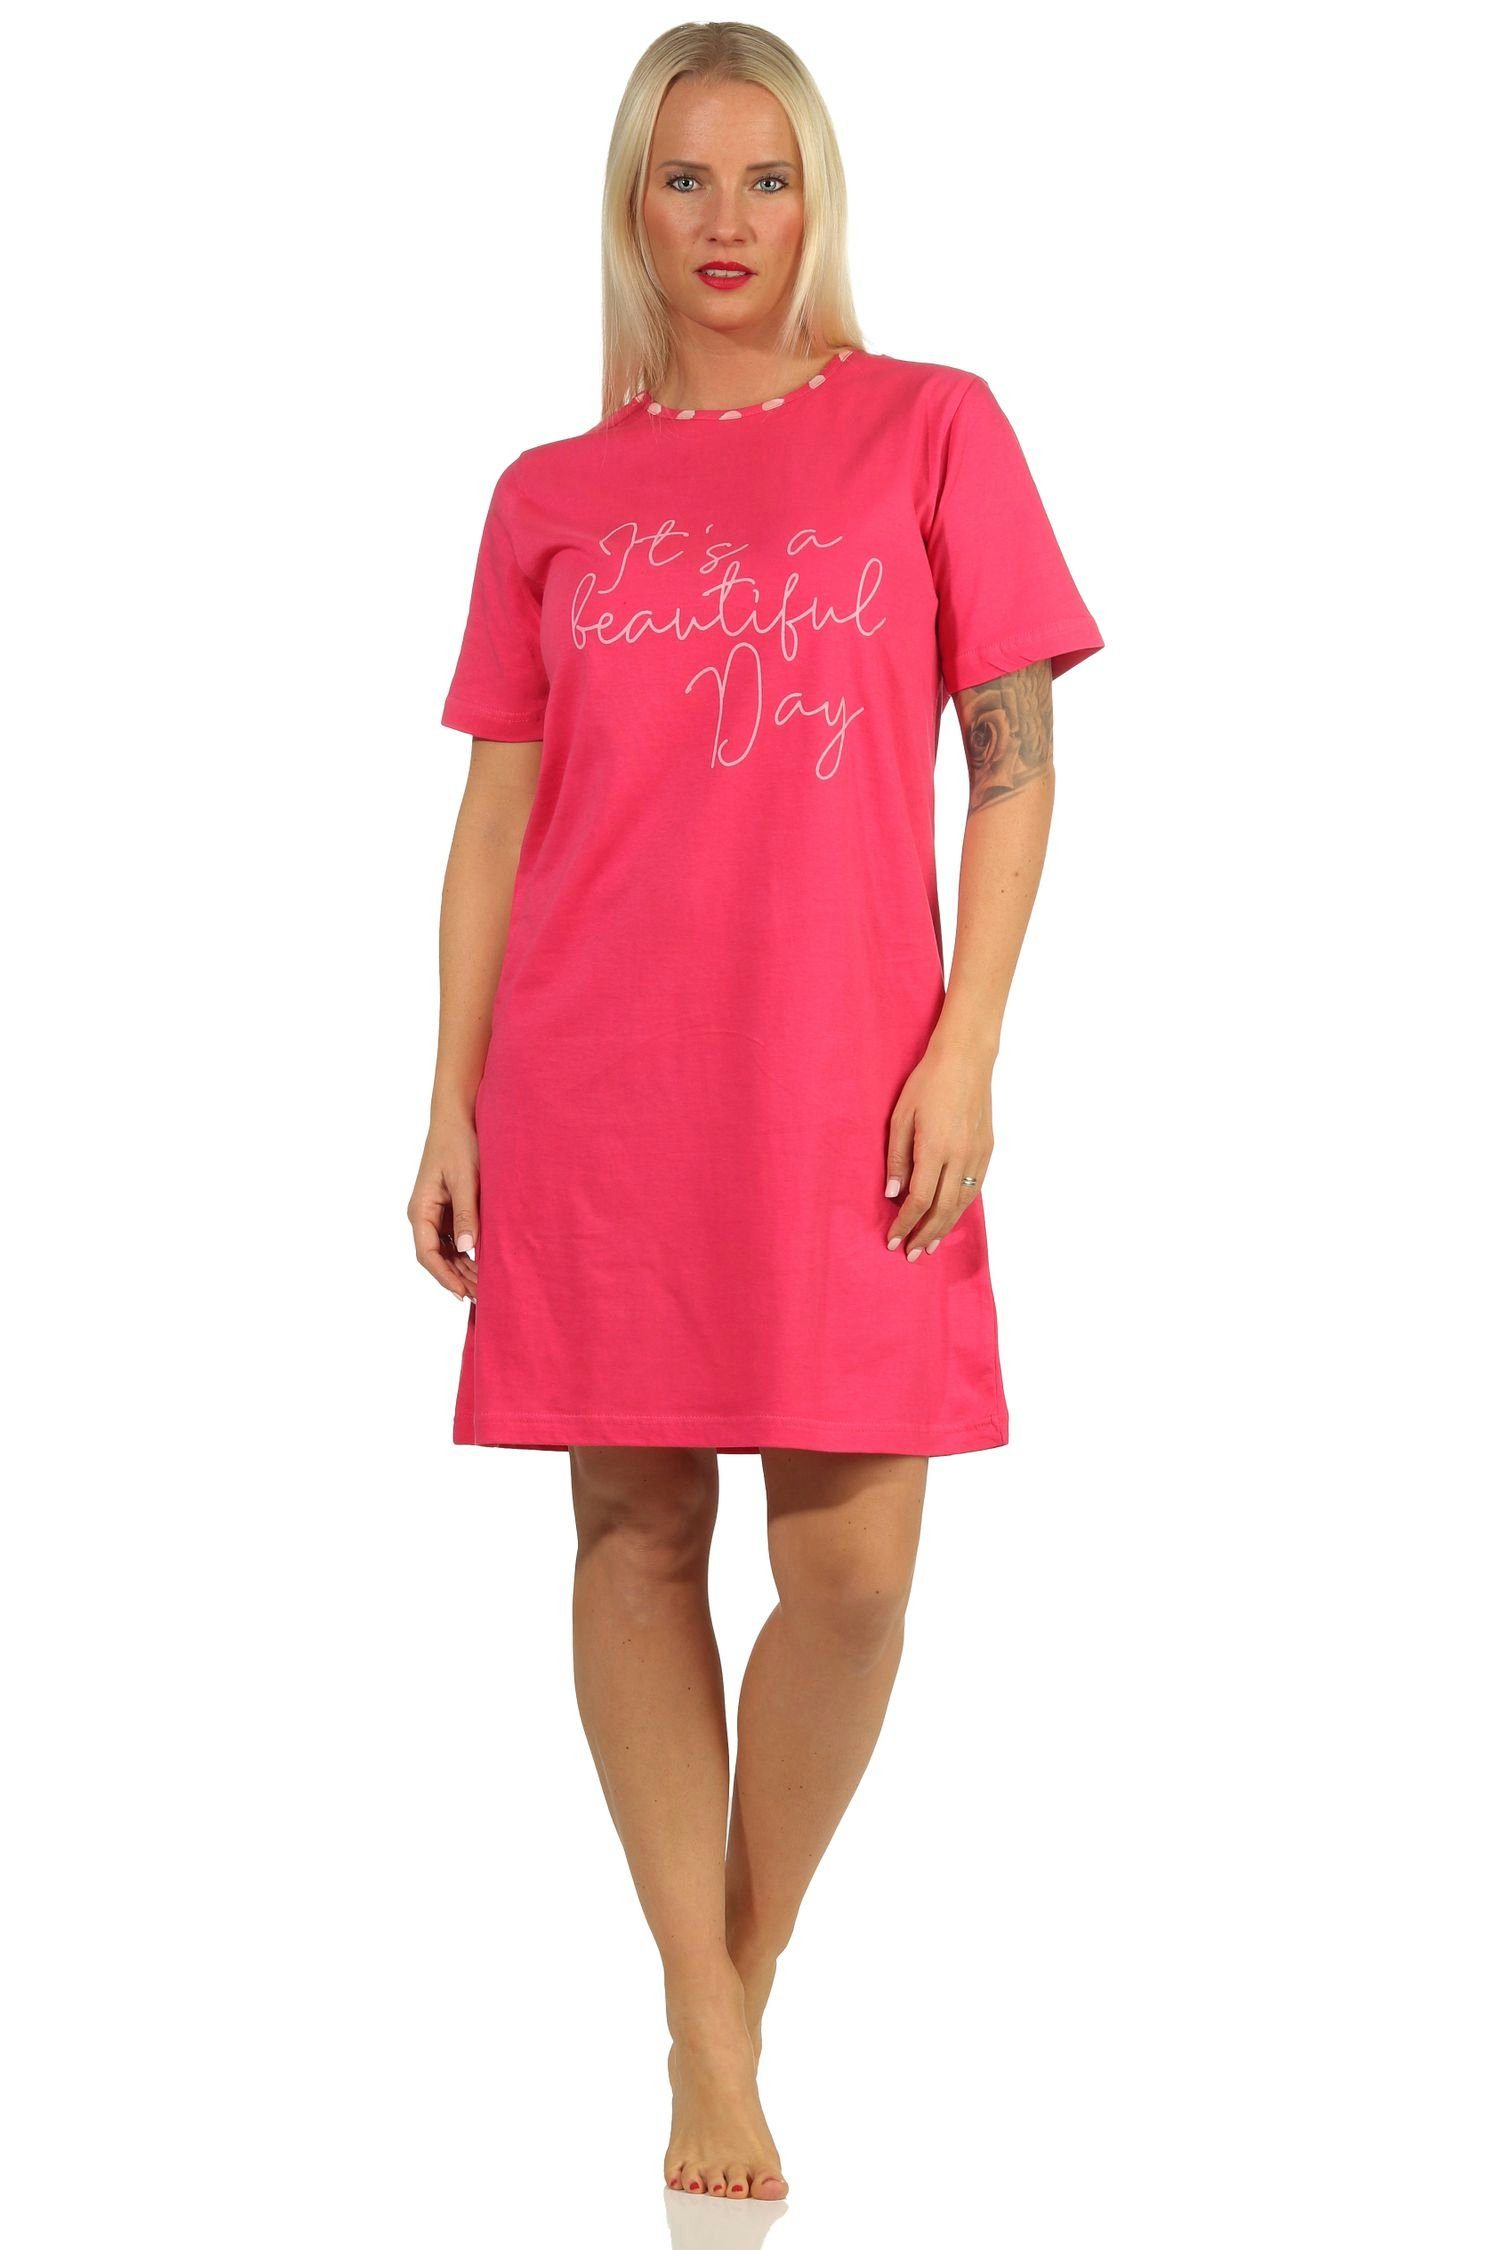 RELAX by Normann Nachthemd Damen kurzarm Nachthemd mit Zierspruch - 112 10 713 pink